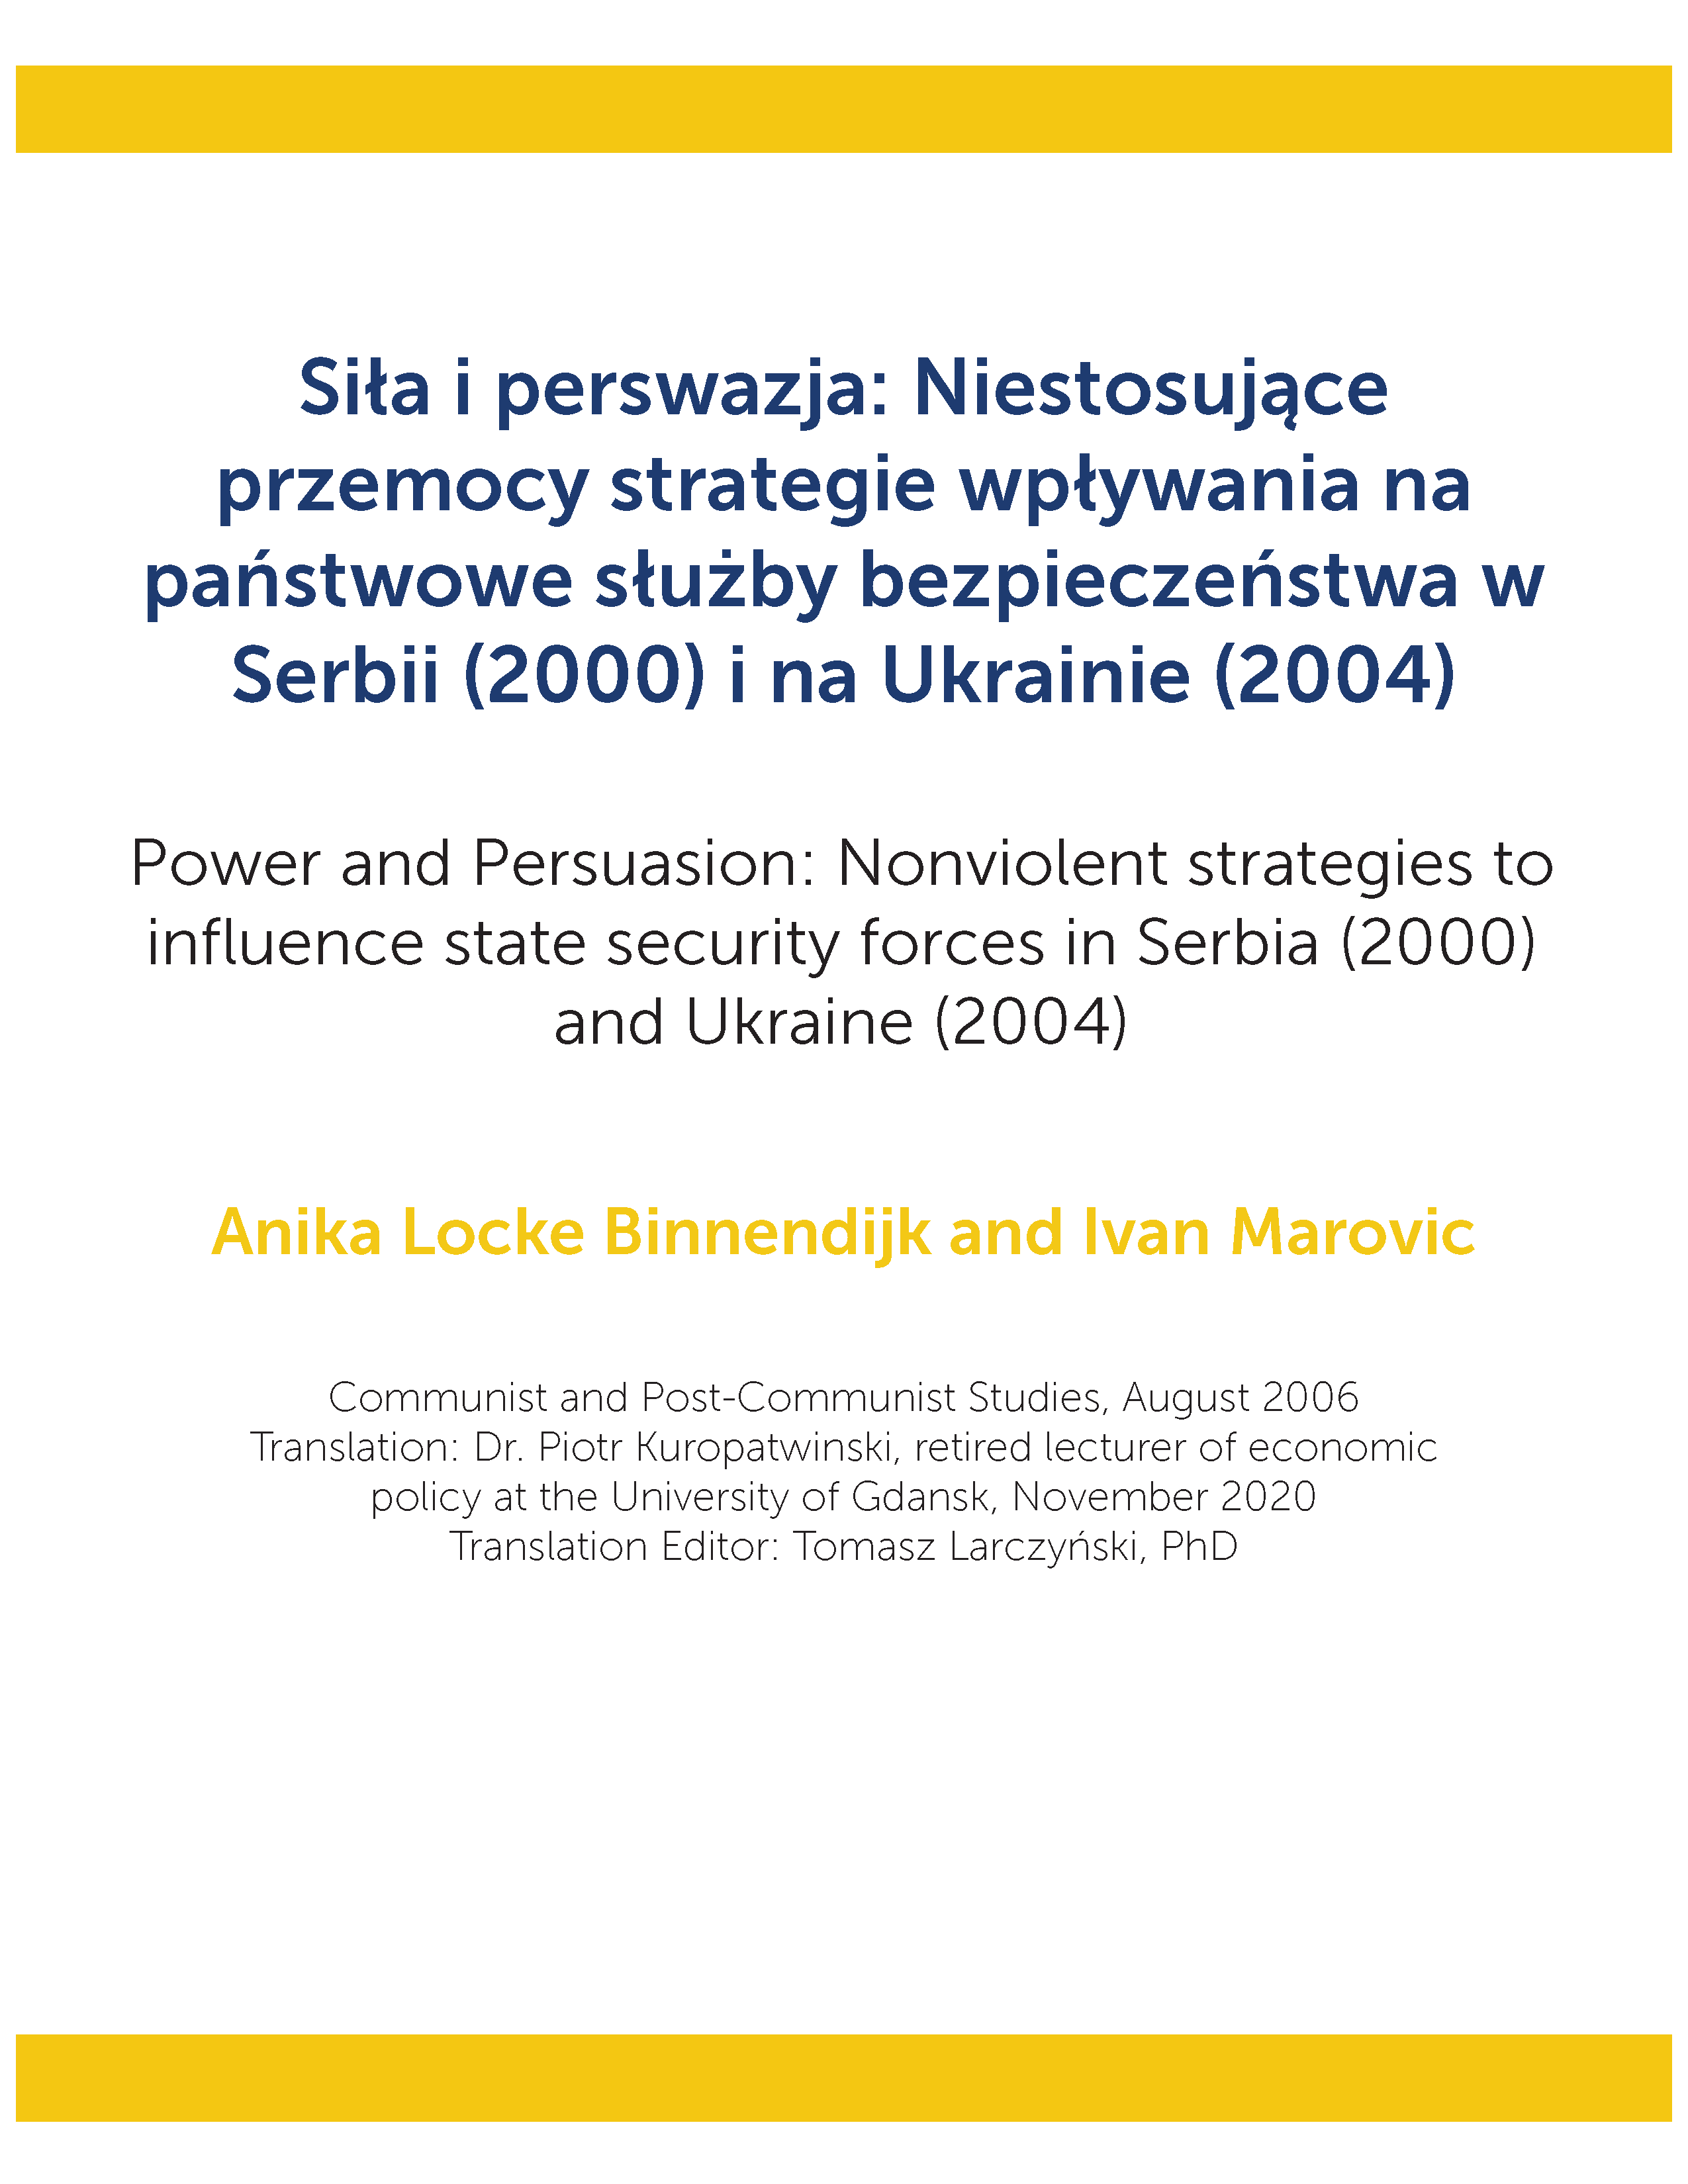 Siła i perswazja: Niestosujące przemocy strategie wpływania na państwowe służby bezpieczeństwa w Serbii (2000) i na Ukrainie (2004)